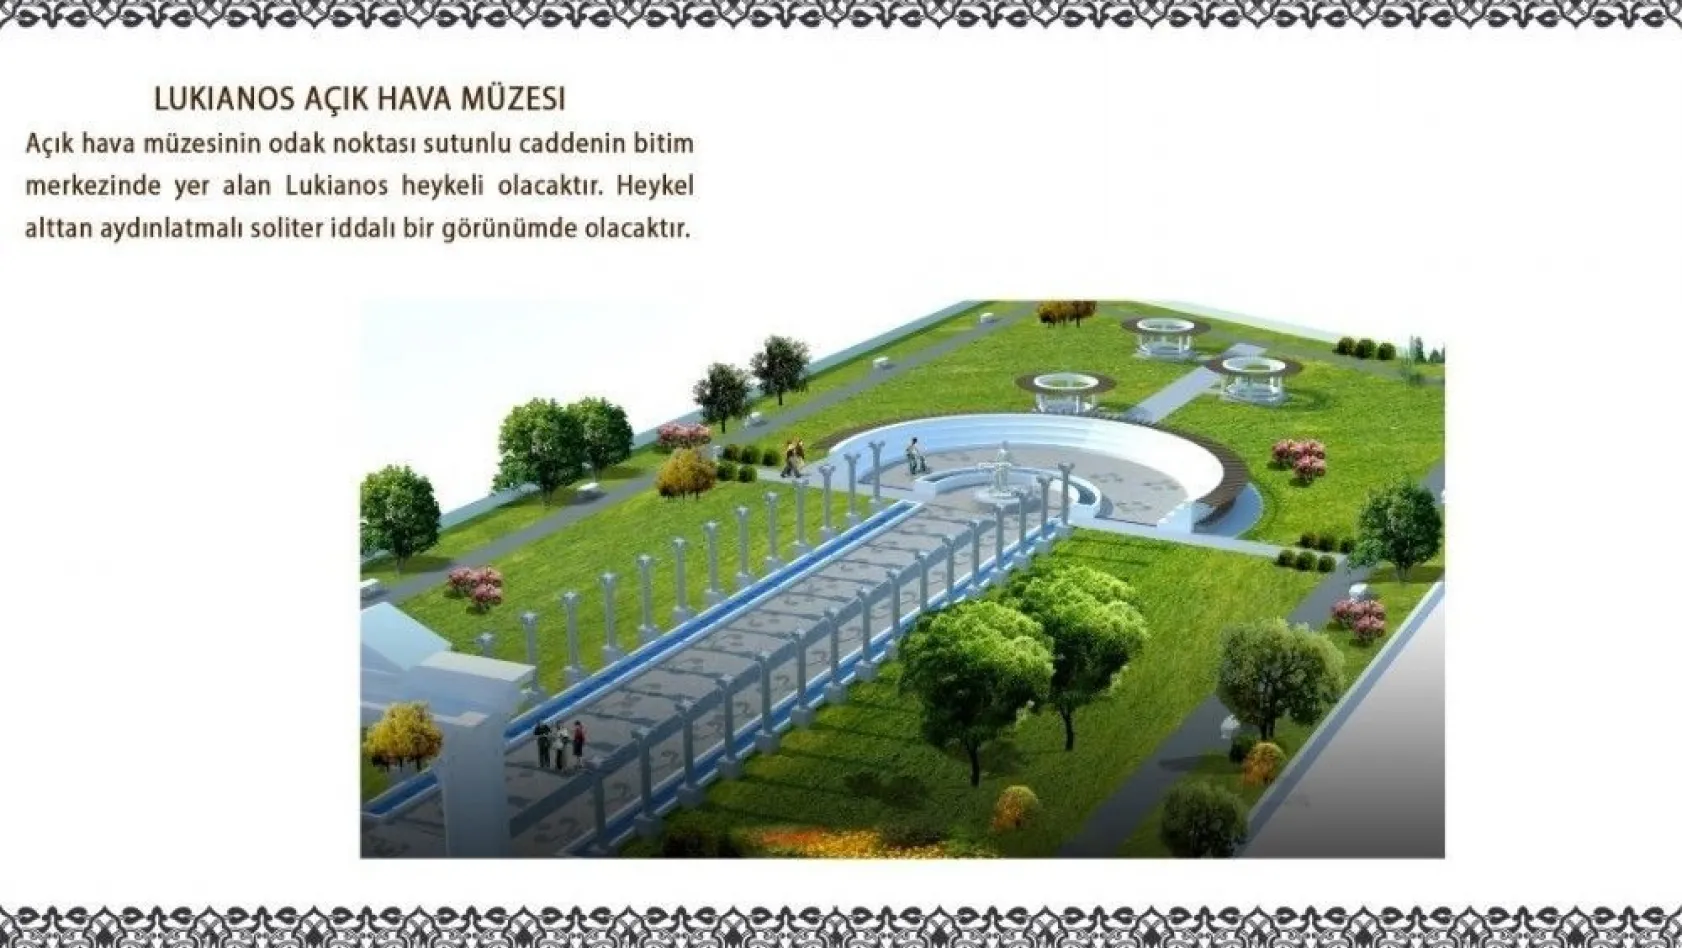 Altınşehir'de açık hava müzesi inşaatına başladı
